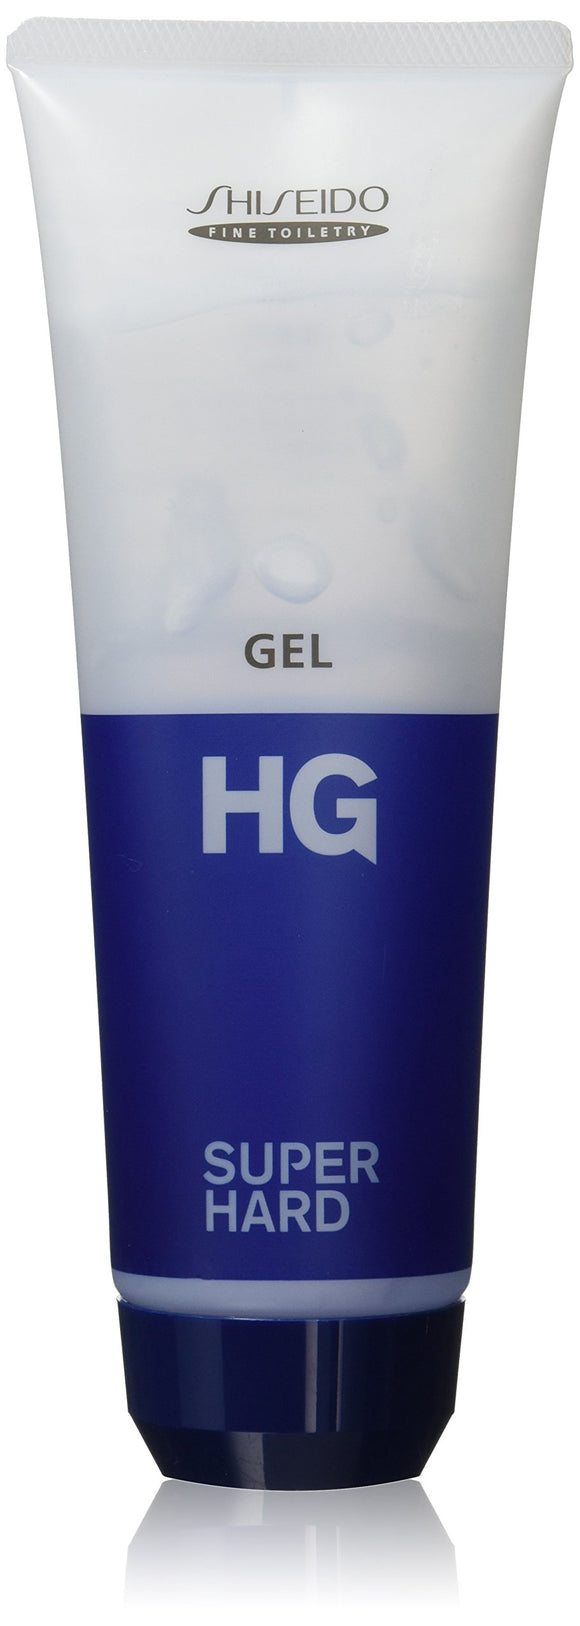 HG Super Hard Gel [HTRC3]